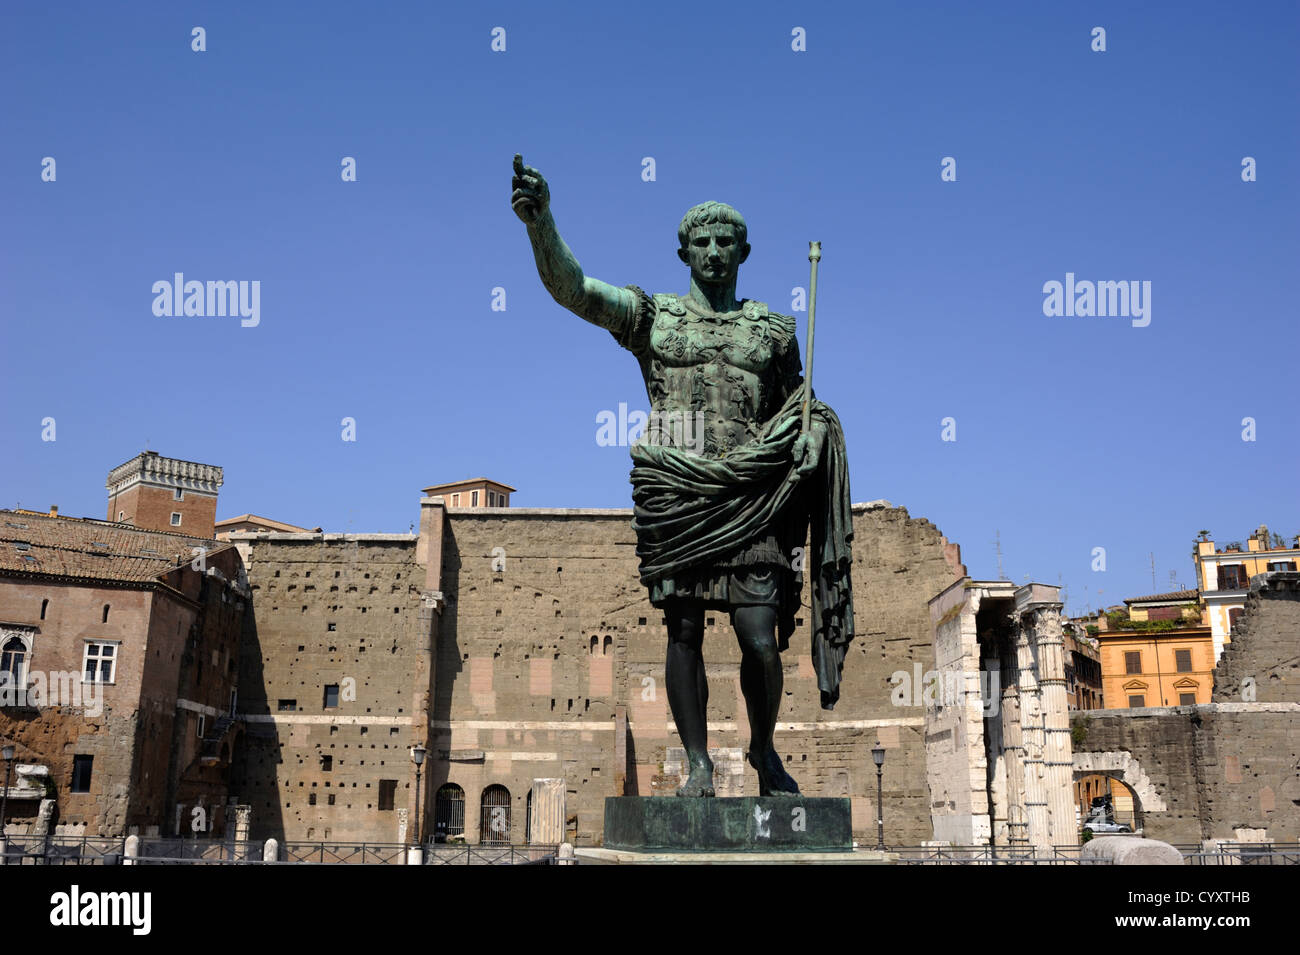 Italy, Rome, statue of roman emperor Julius Caesar Augustus and forum of Augustus Stock Photo